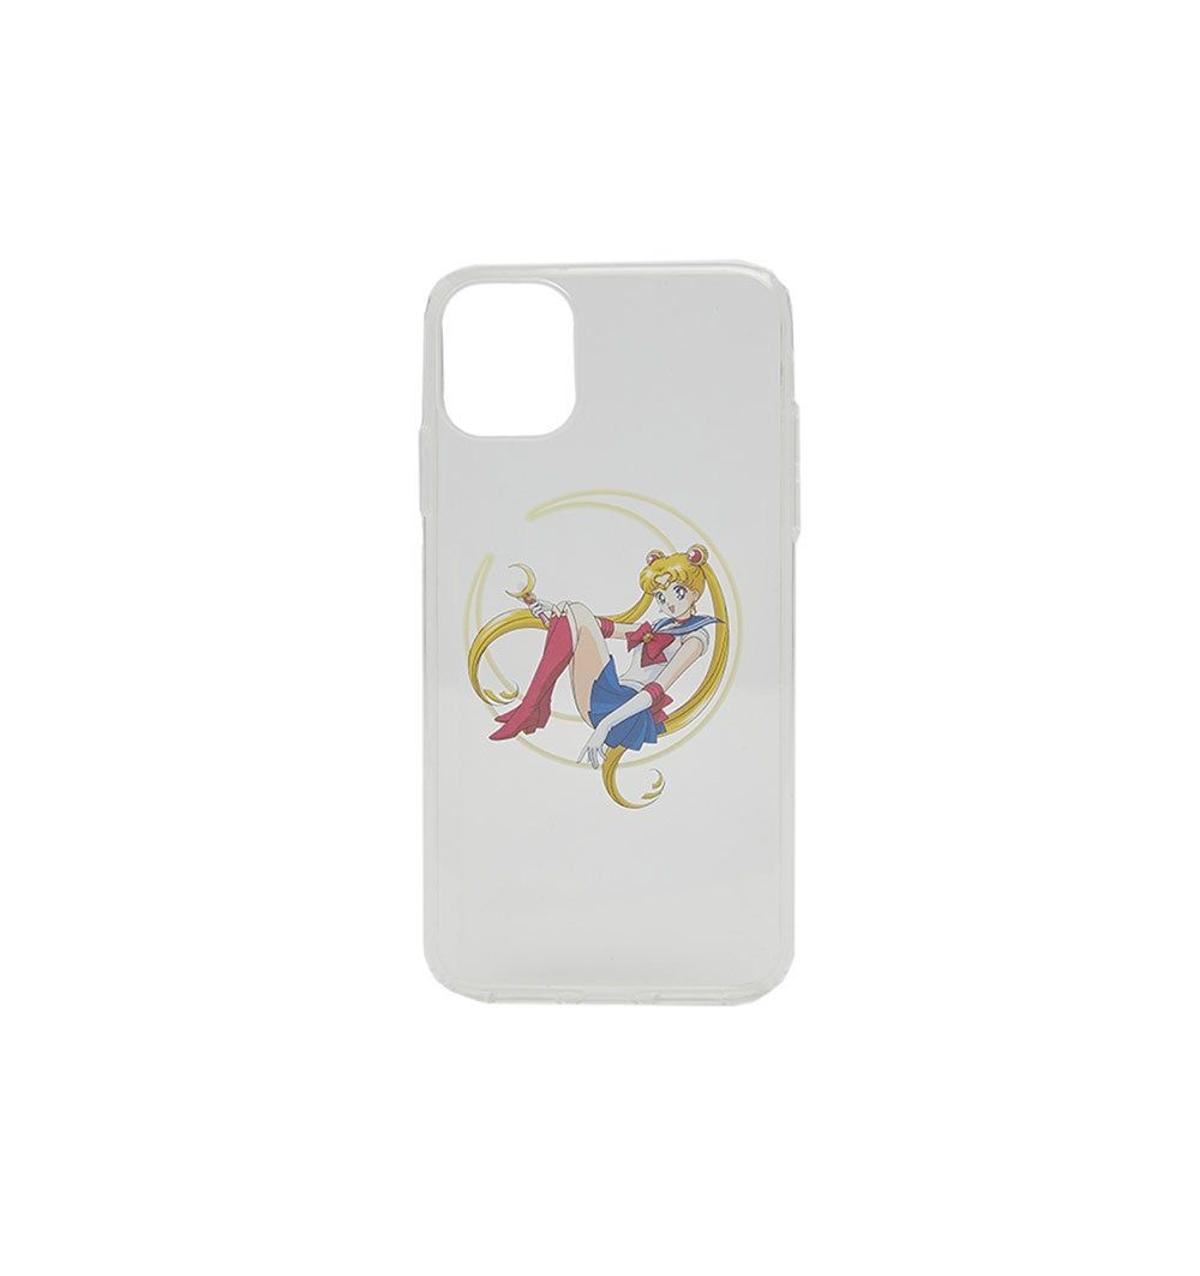 Carcasa iPhone 6/6S/7/8 Sailor Moon x Bershka (precio: 6,99 euros)